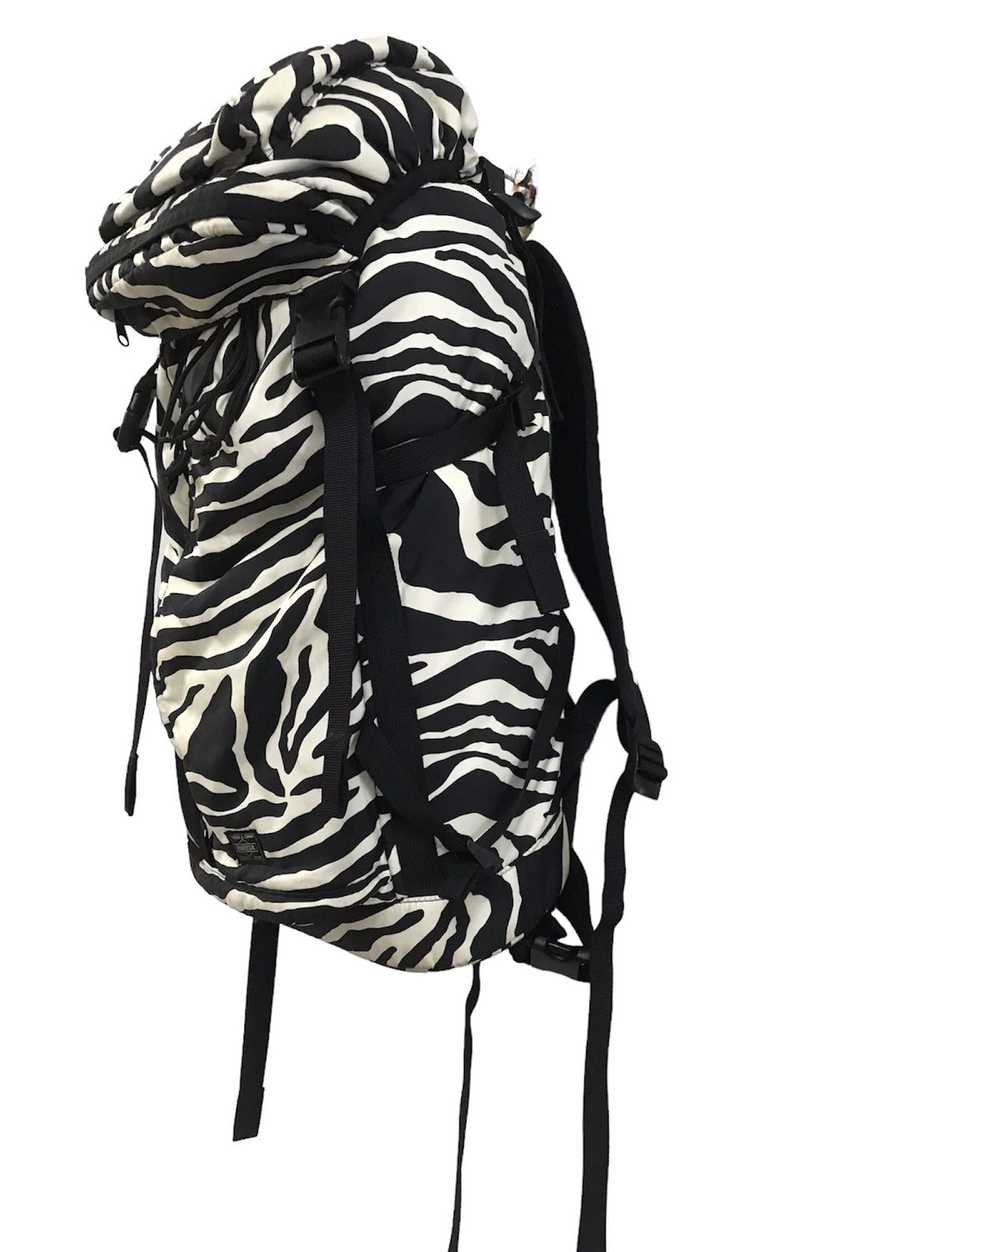 Porter Porter-Zebra Rucksack backpack - image 3